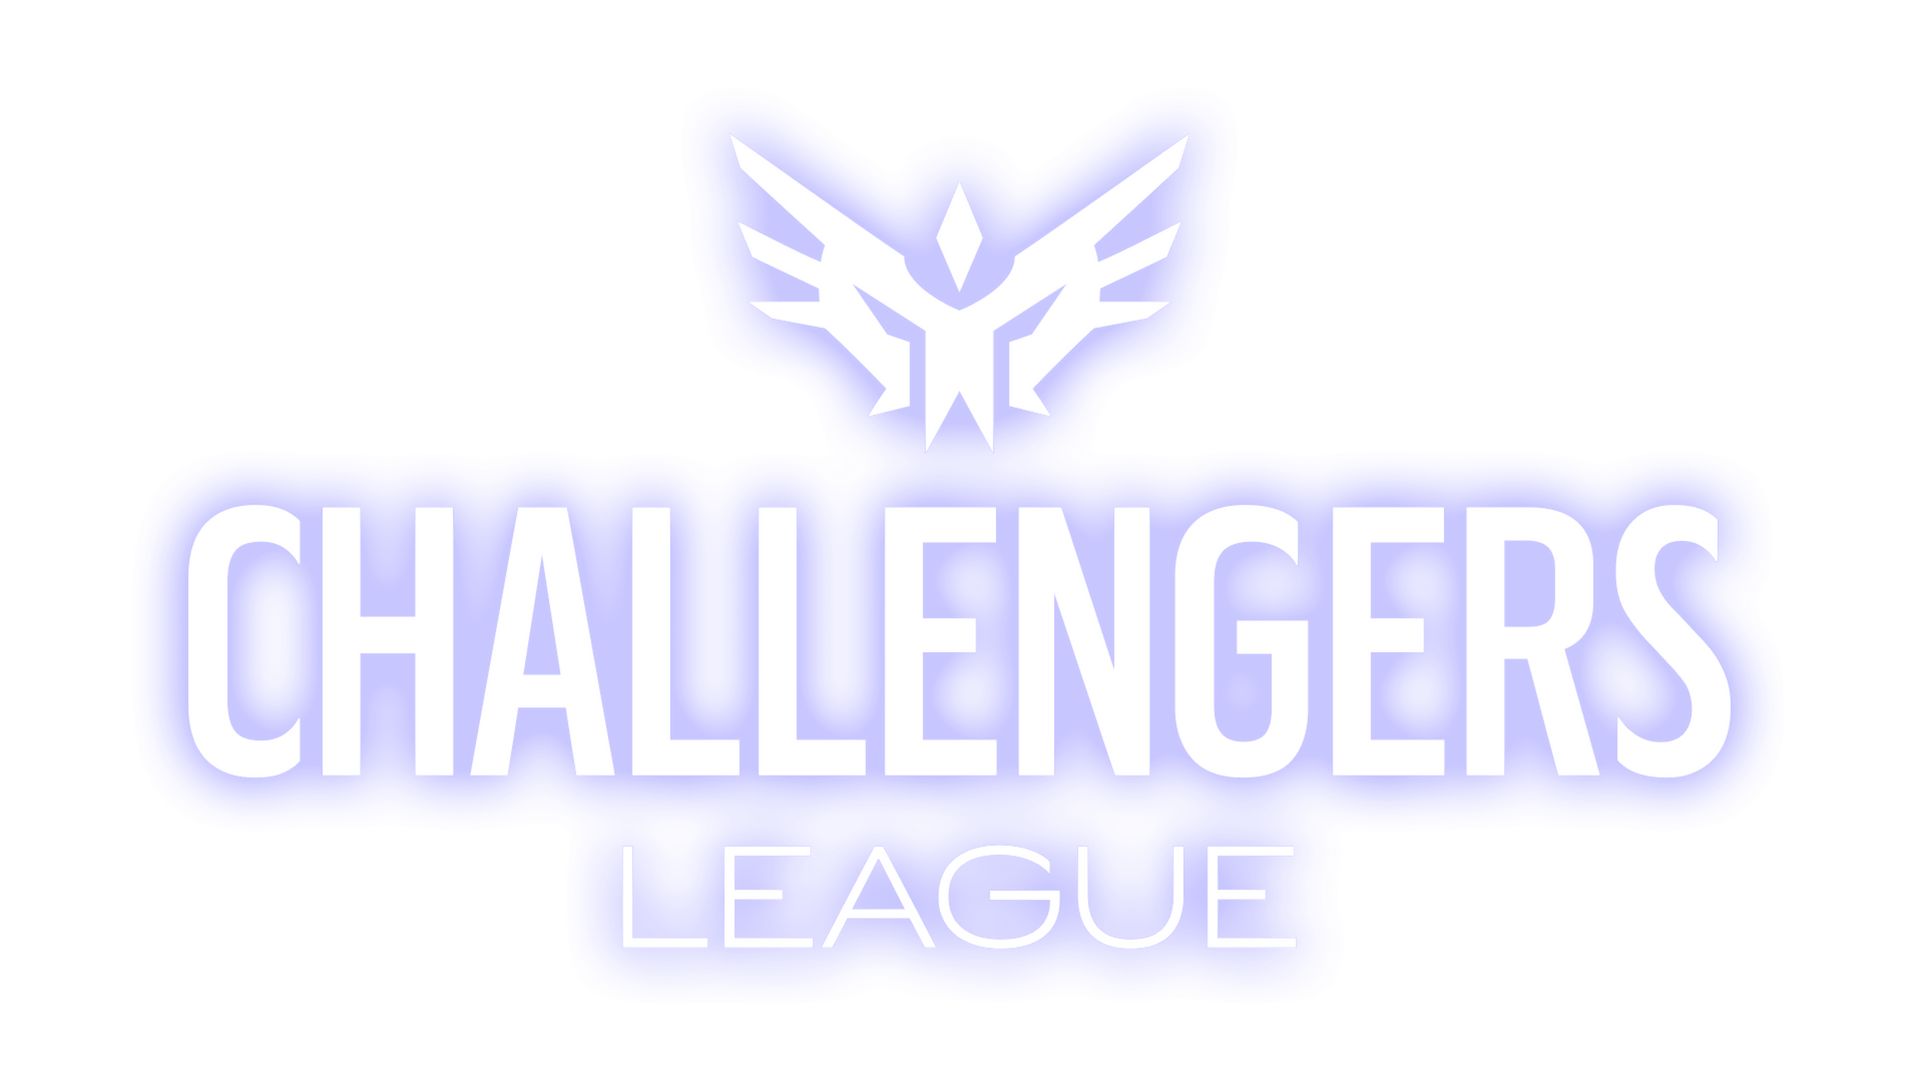 Challengers League